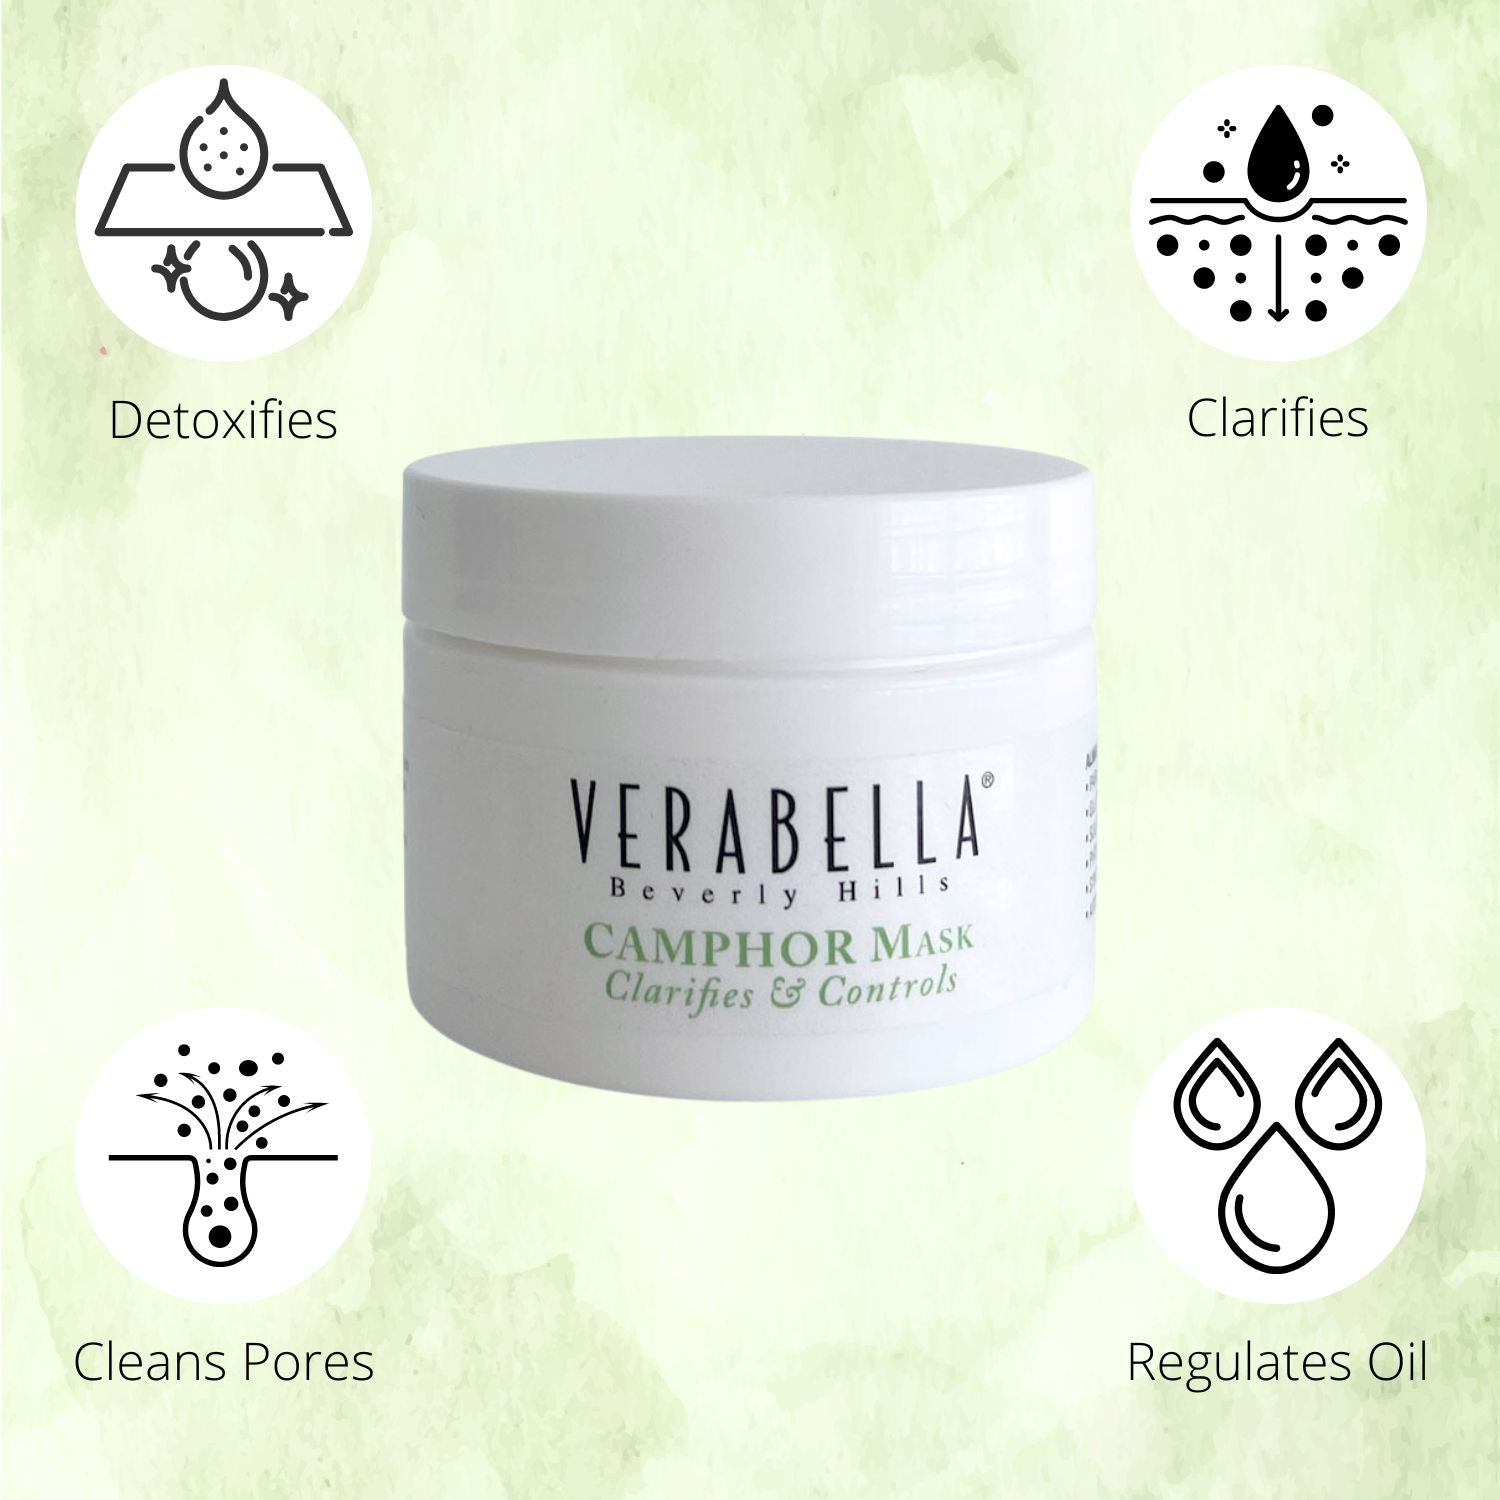 Verabella Camphor Mask clarifies and controls sebum